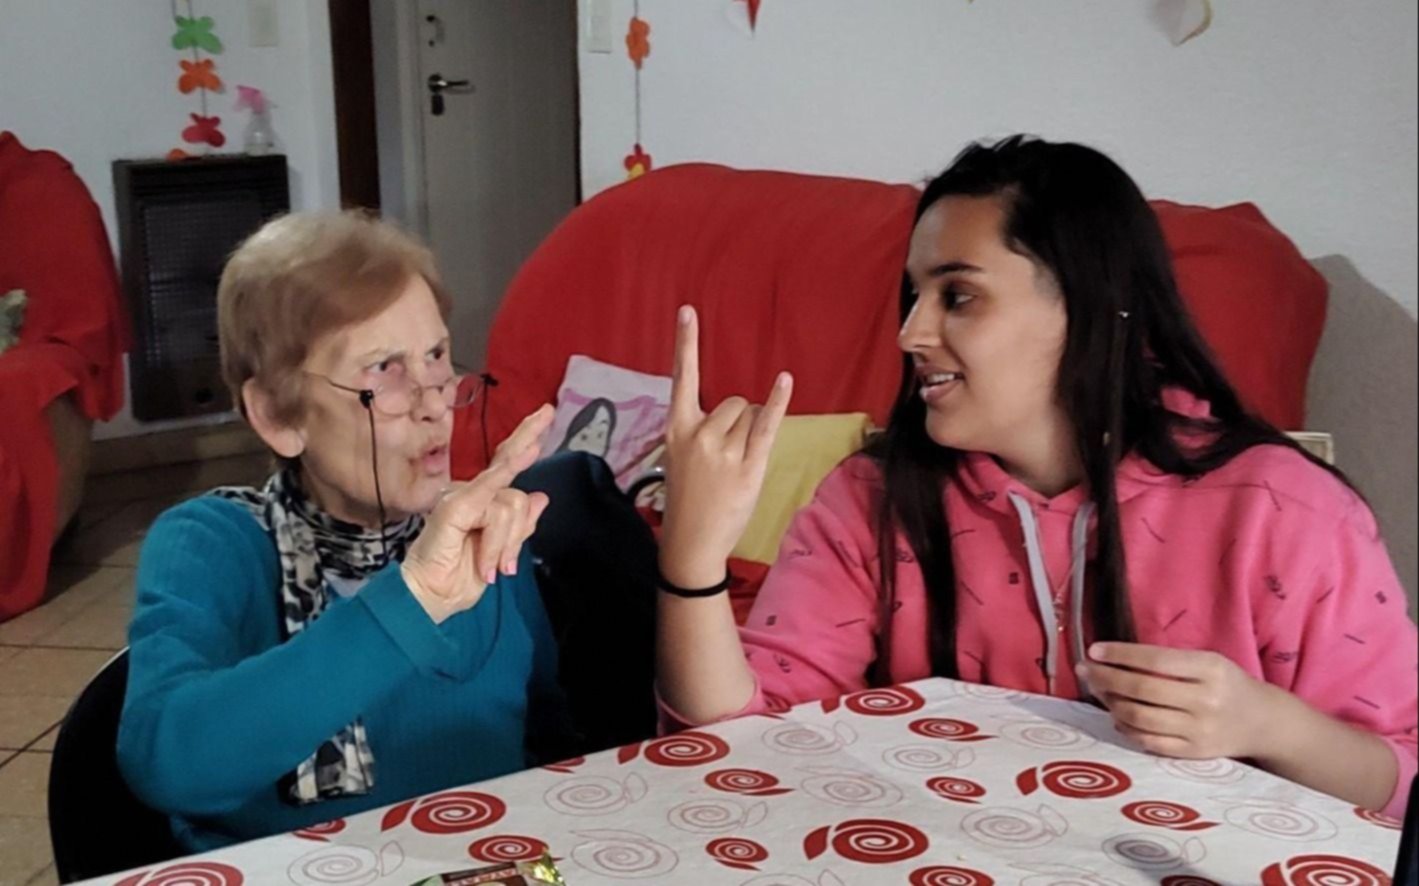 Inclusión y solidaridad: ONG invita a personas sordas a sus voluntariados